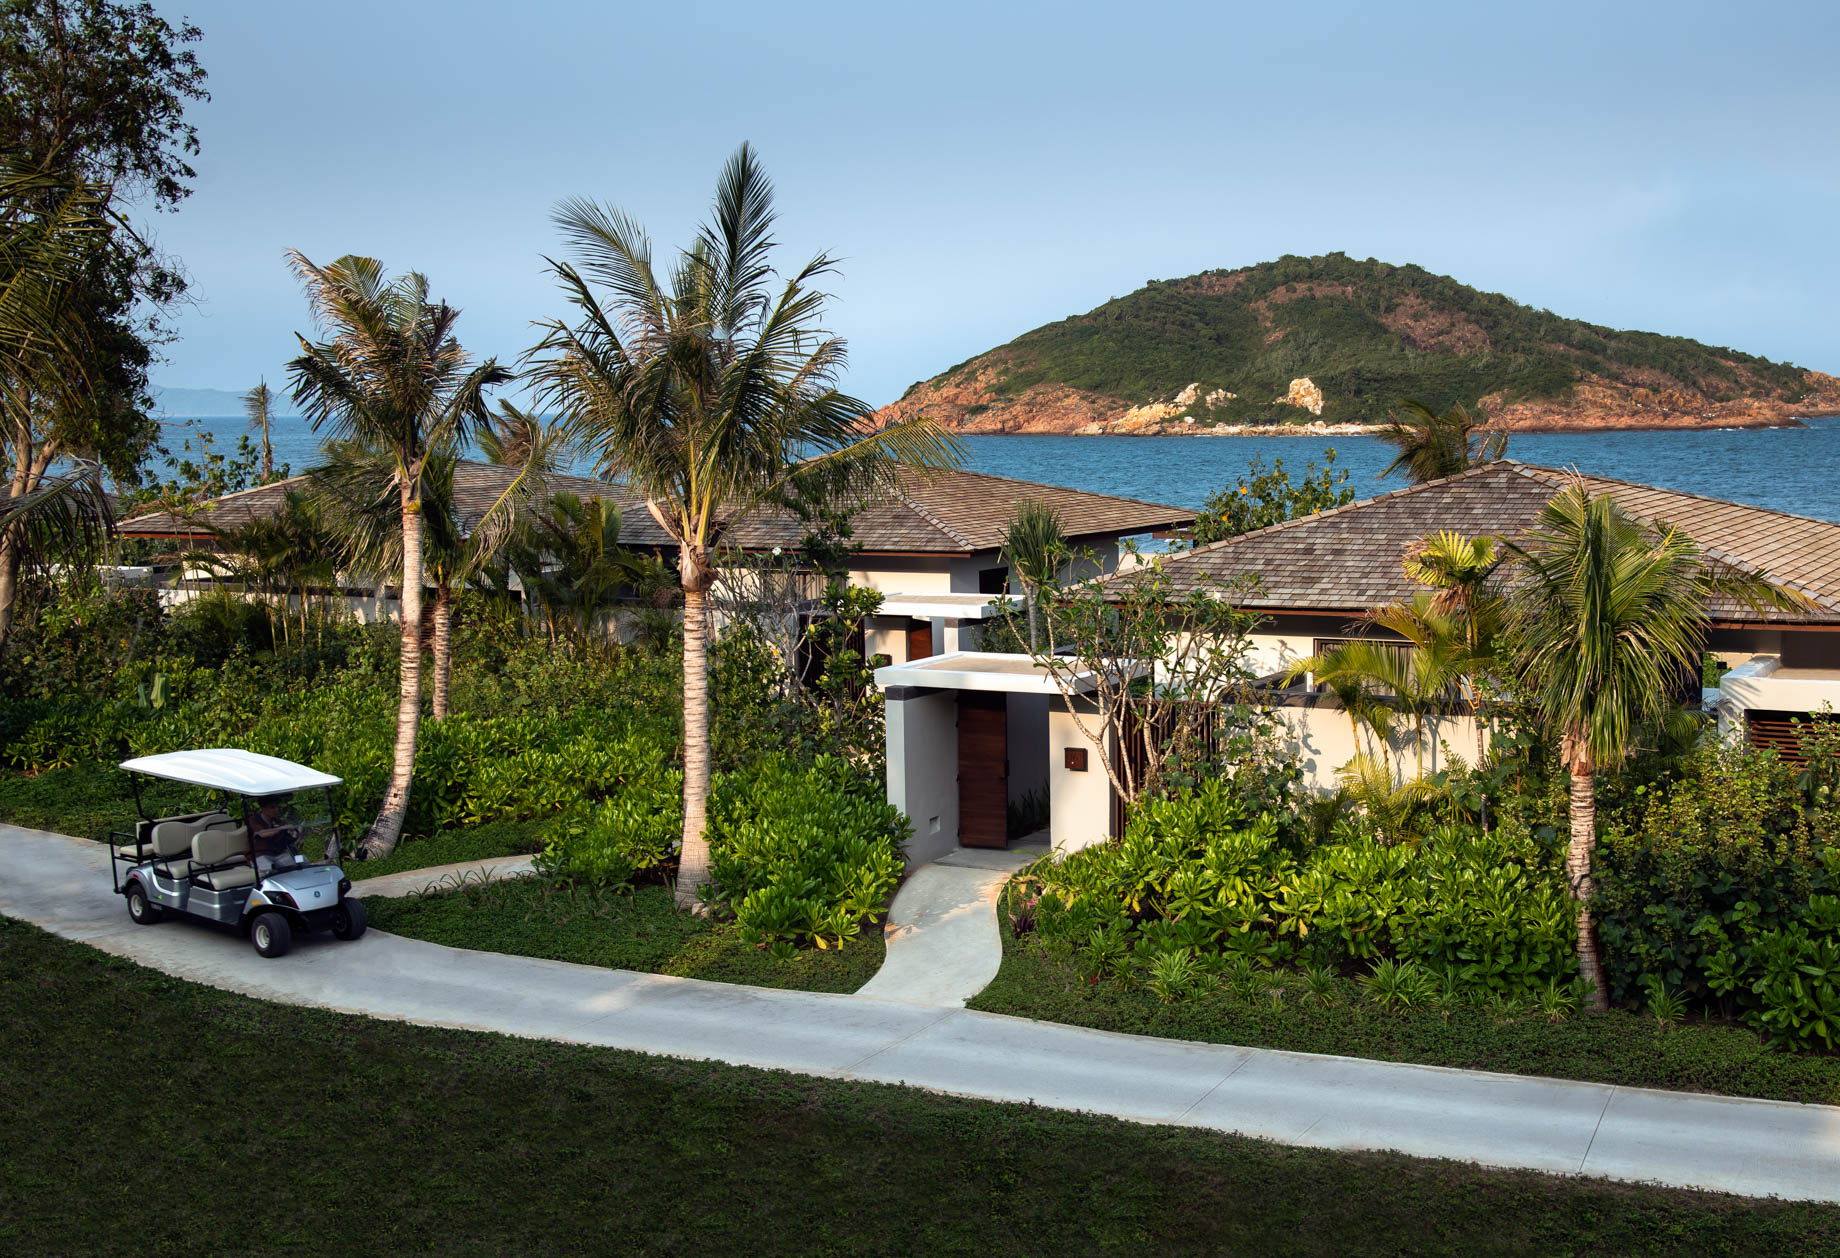 Anantara Quy Nhon Villas Resort – Quy Nhon, Vietnam – Beachfront Villa Pathway